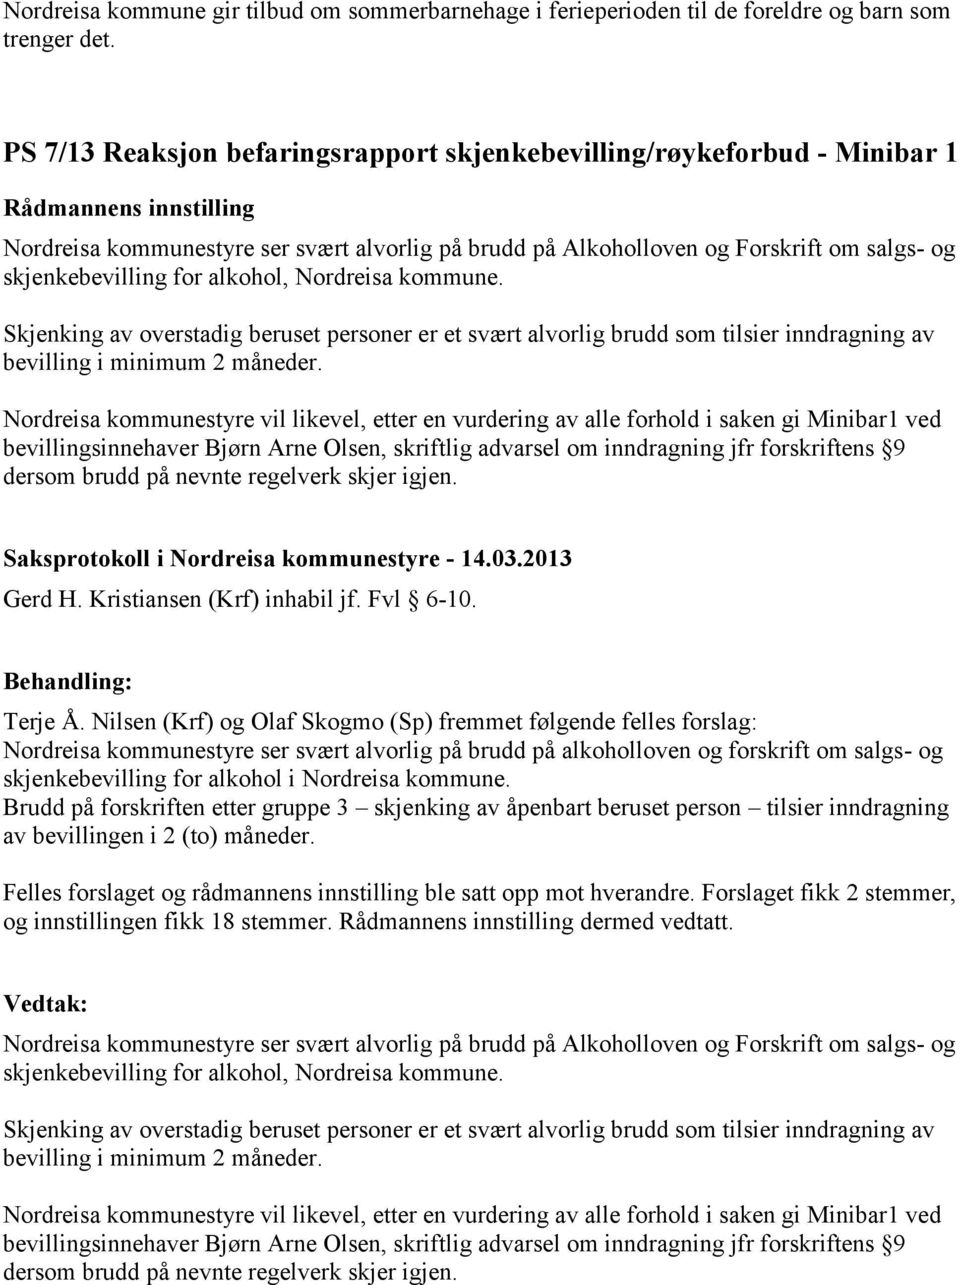 skjenkebevilling for alkohol, Nordreisa kommune. Skjenking av overstadig beruset personer er et svært alvorlig brudd som tilsier inndragning av bevilling i minimum 2 måneder.